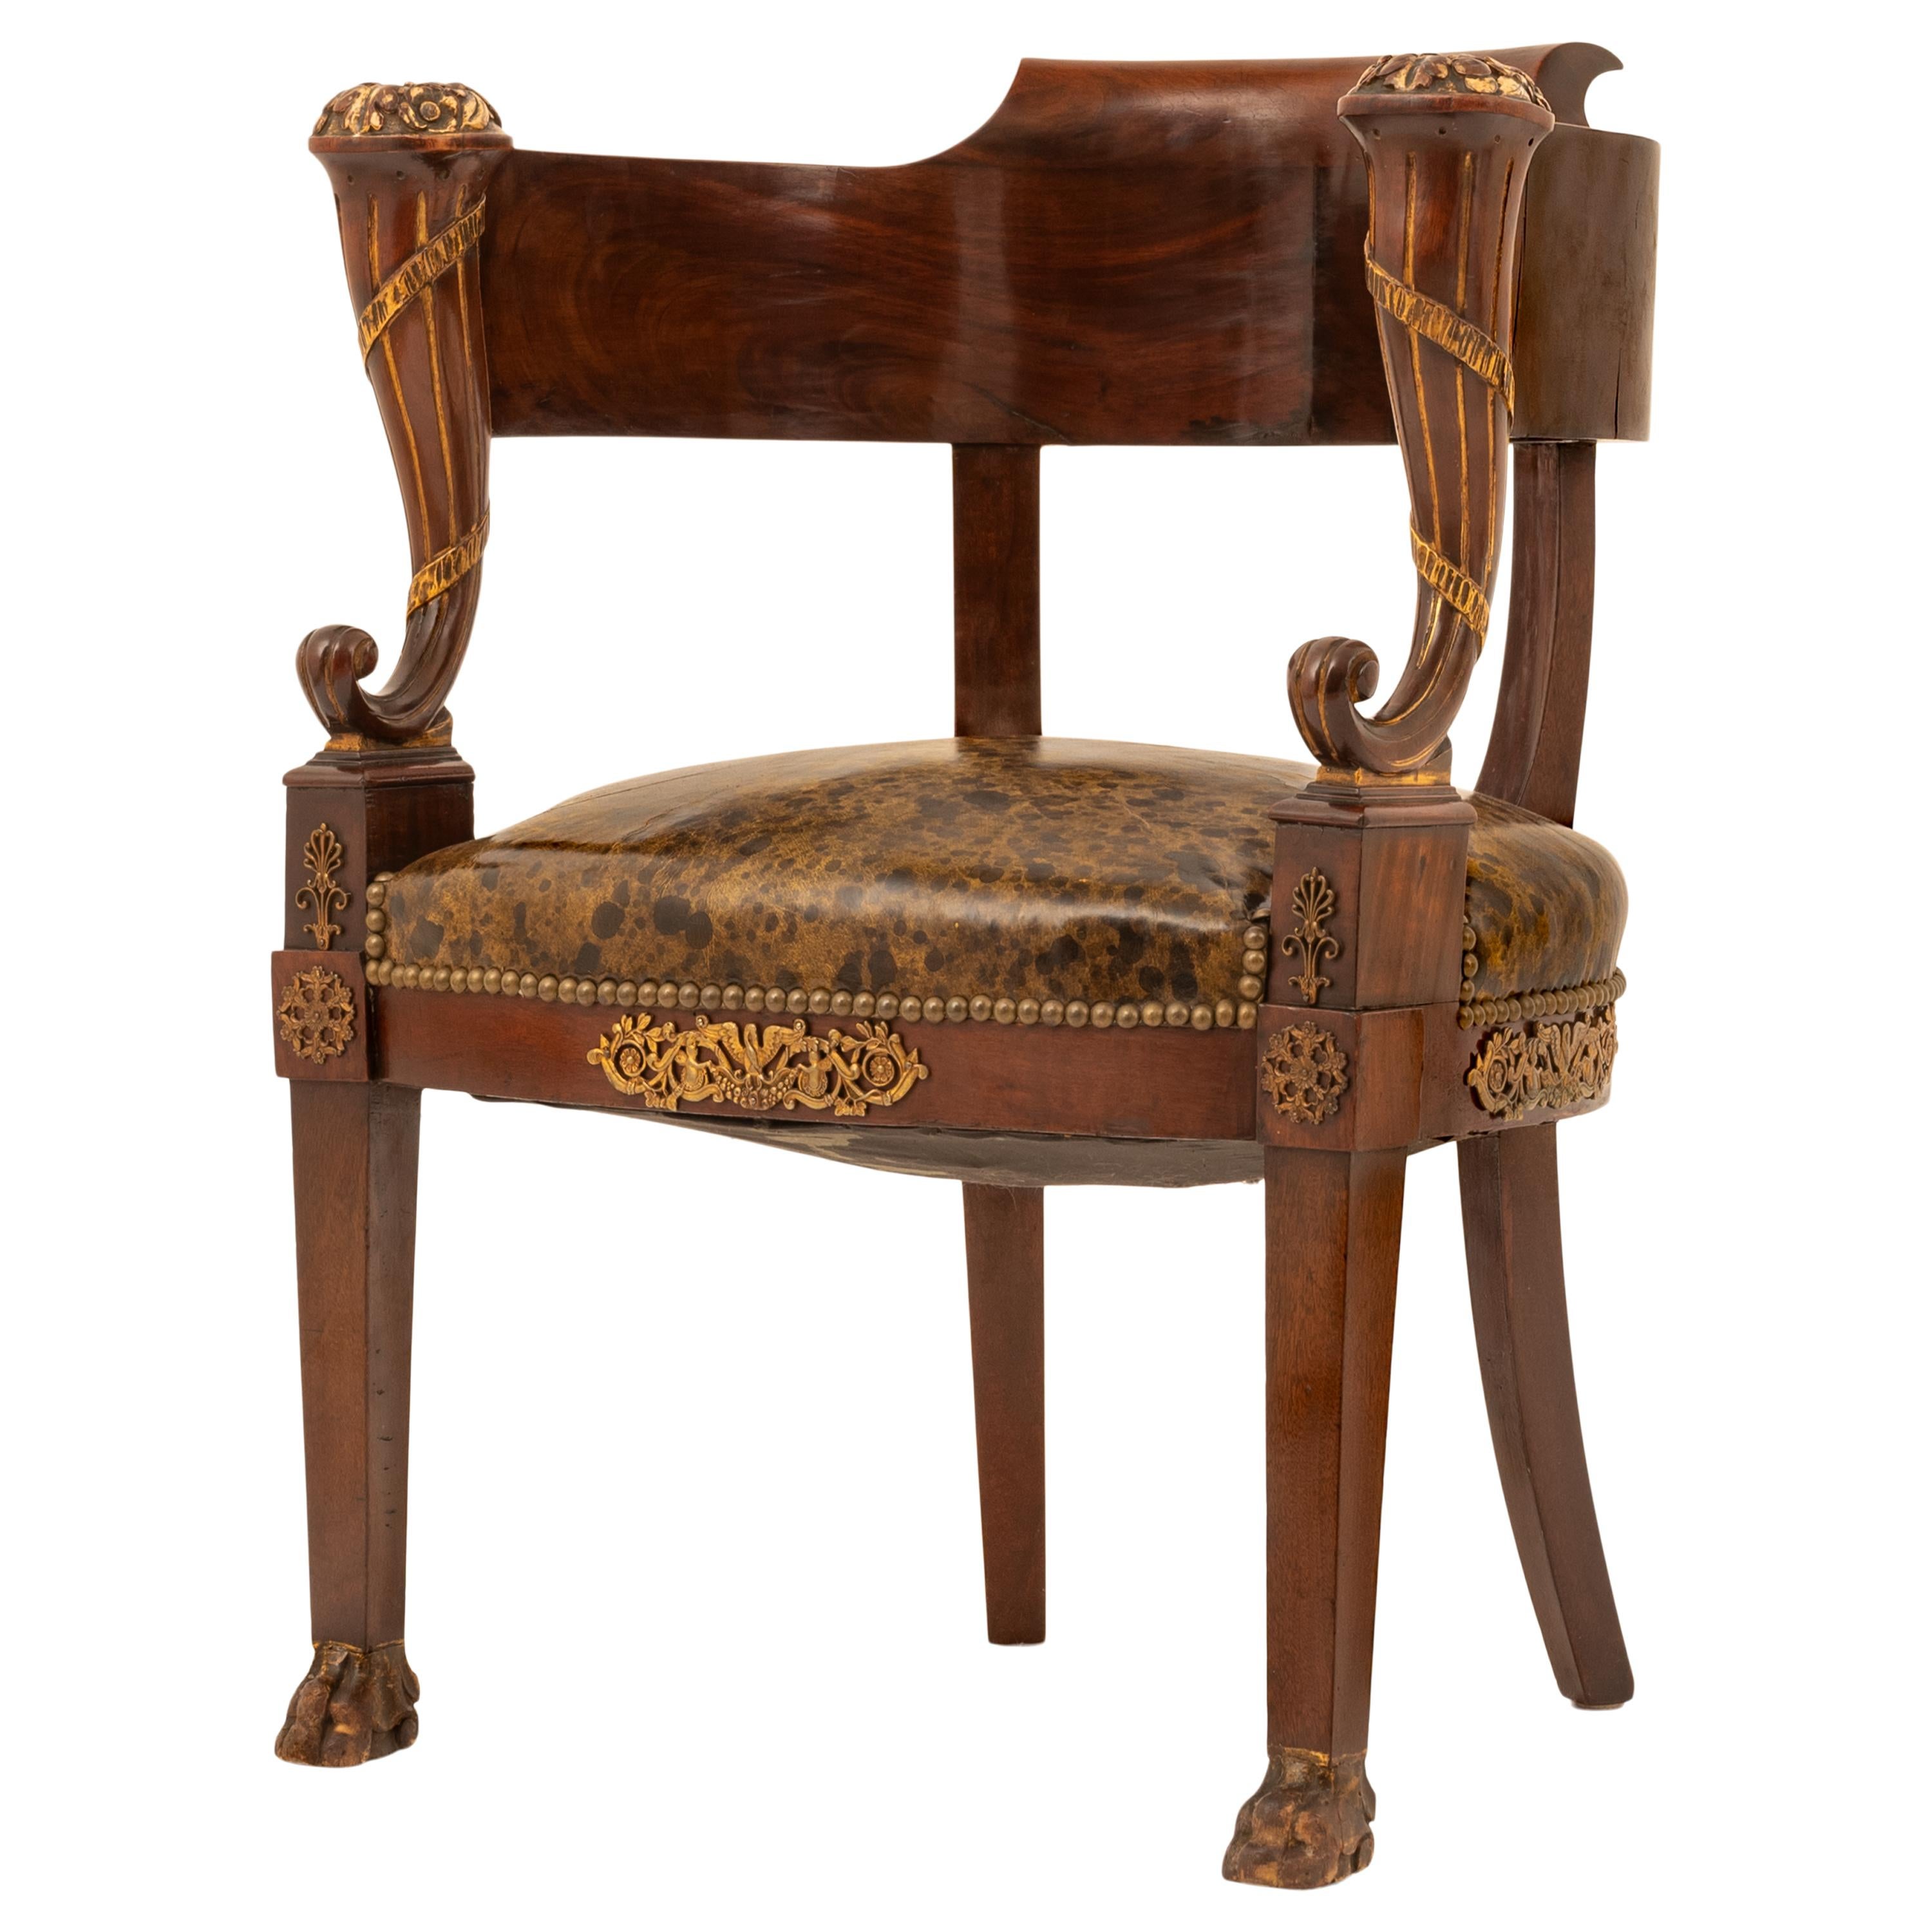 Eine feine und stilvolle antike Französisch Empire Napoleonischen Paket vergoldet und Ormolu montiert Französisch Fauteuil de bureau (Schreibtischstuhl), um 1815.
Die Rückenlehne und die Armlehne des Stuhls haben die Form eines Bügels mit einem Paar